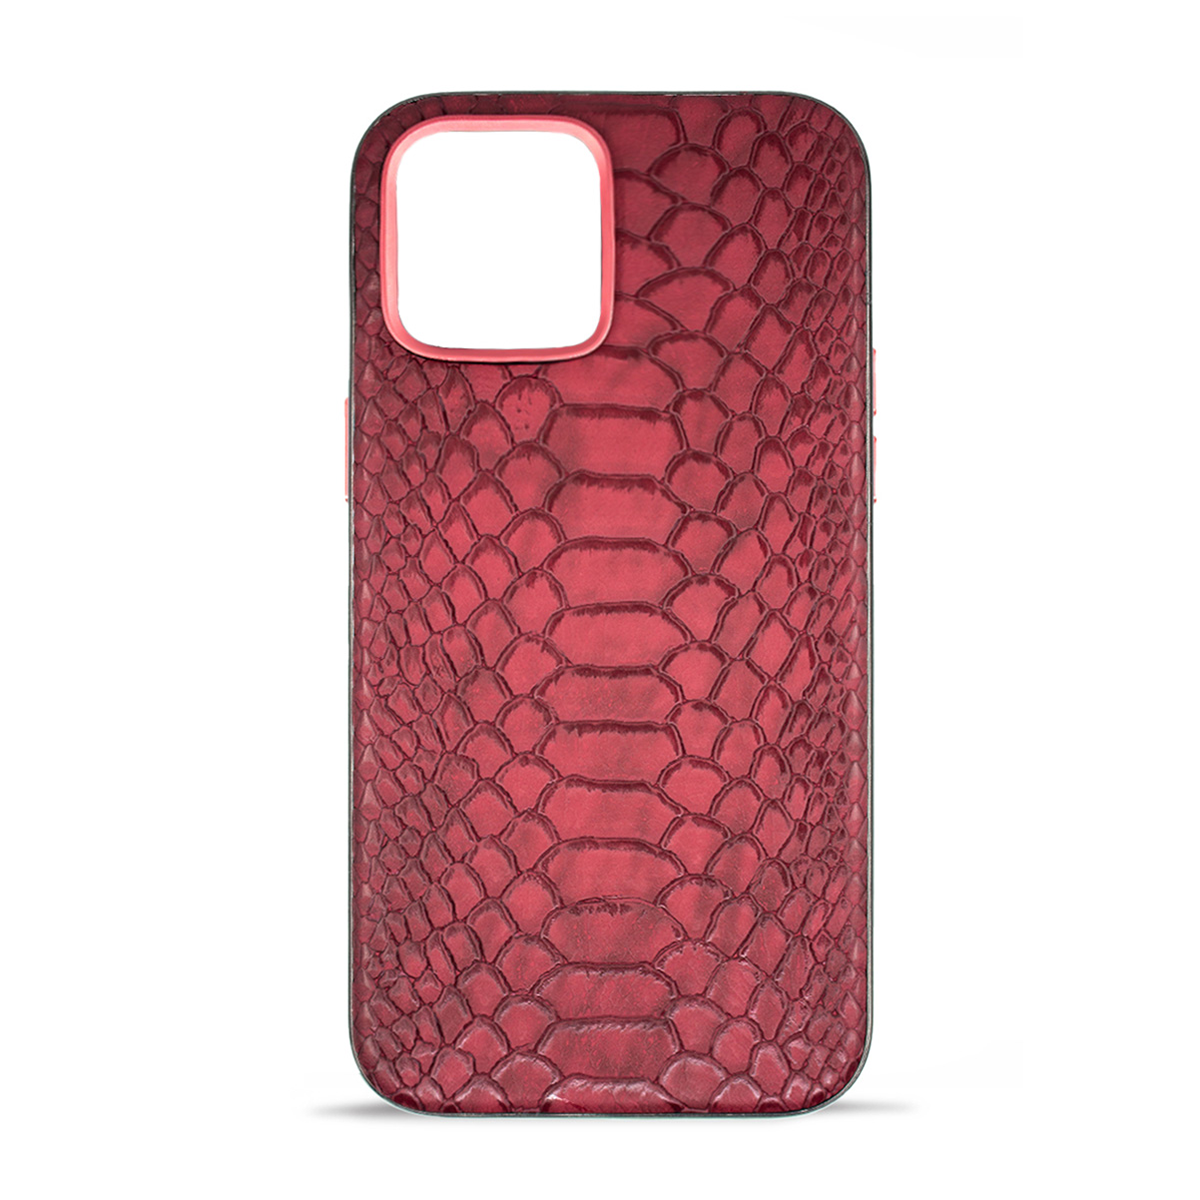 قاب گوشی اپل iPhone 12 مک کوی مدل Snake Skin چرمی